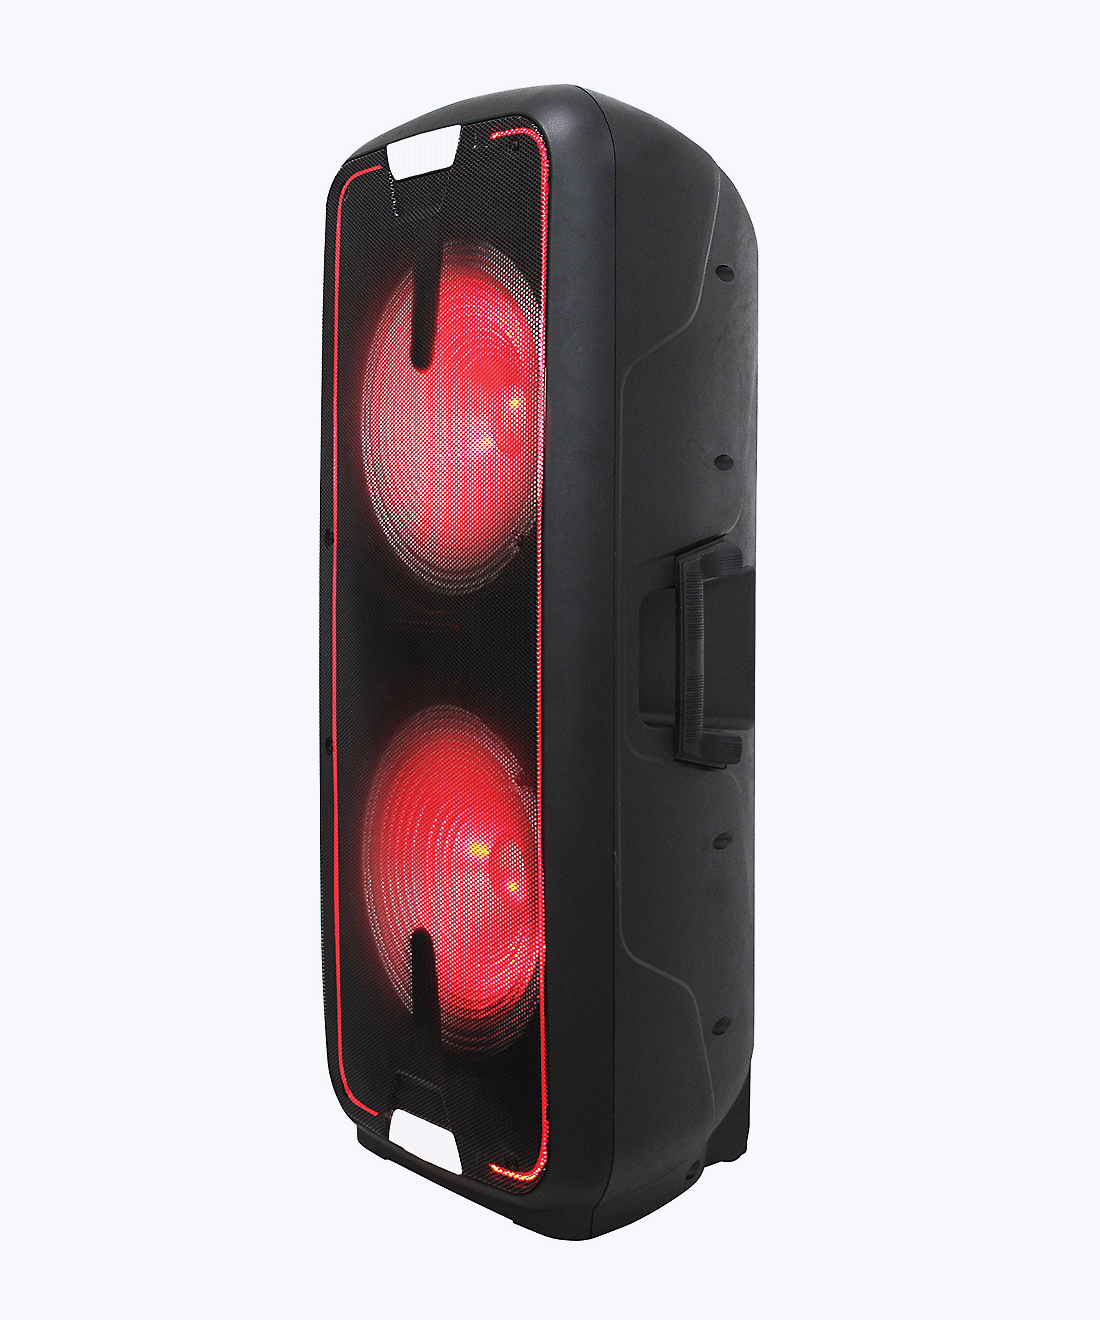 Lighted portable speaker